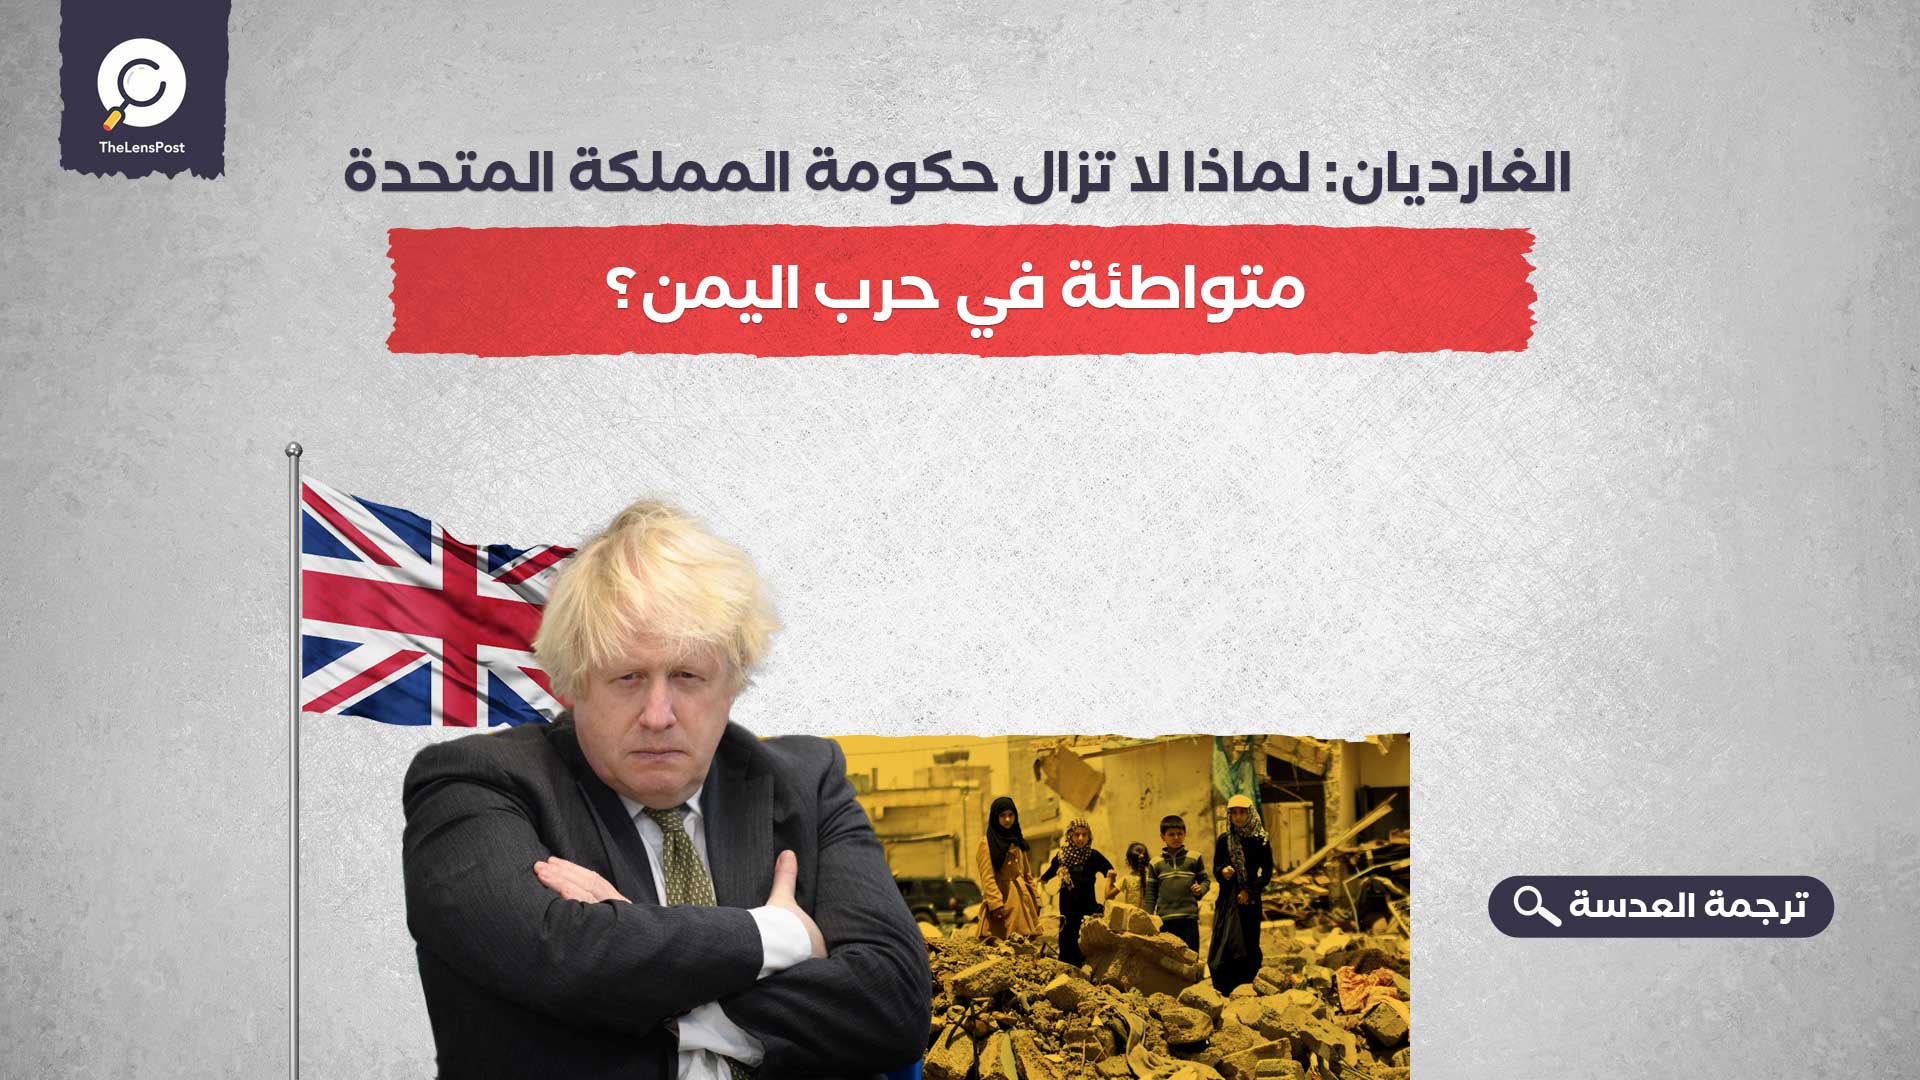 الغارديان: لماذا لا تزال حكومة المملكة المتحدة متواطئة في حرب اليمن؟